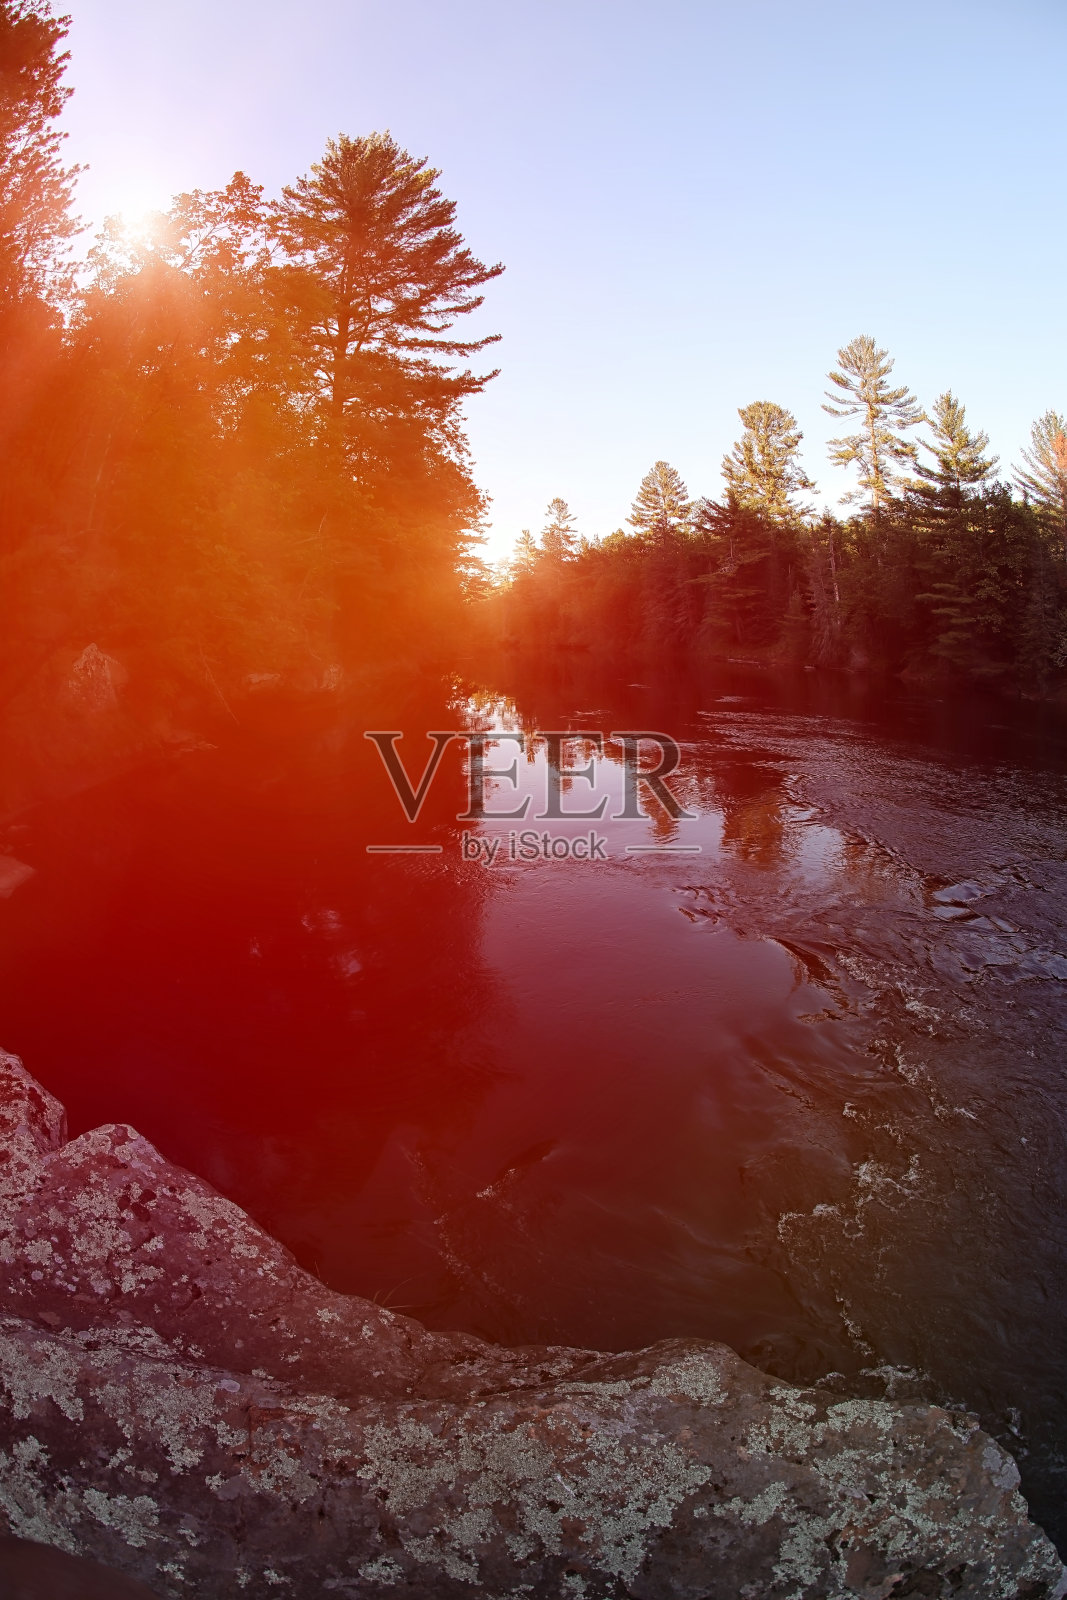 明尼苏达州班宁州立公园的水壶河照片摄影图片